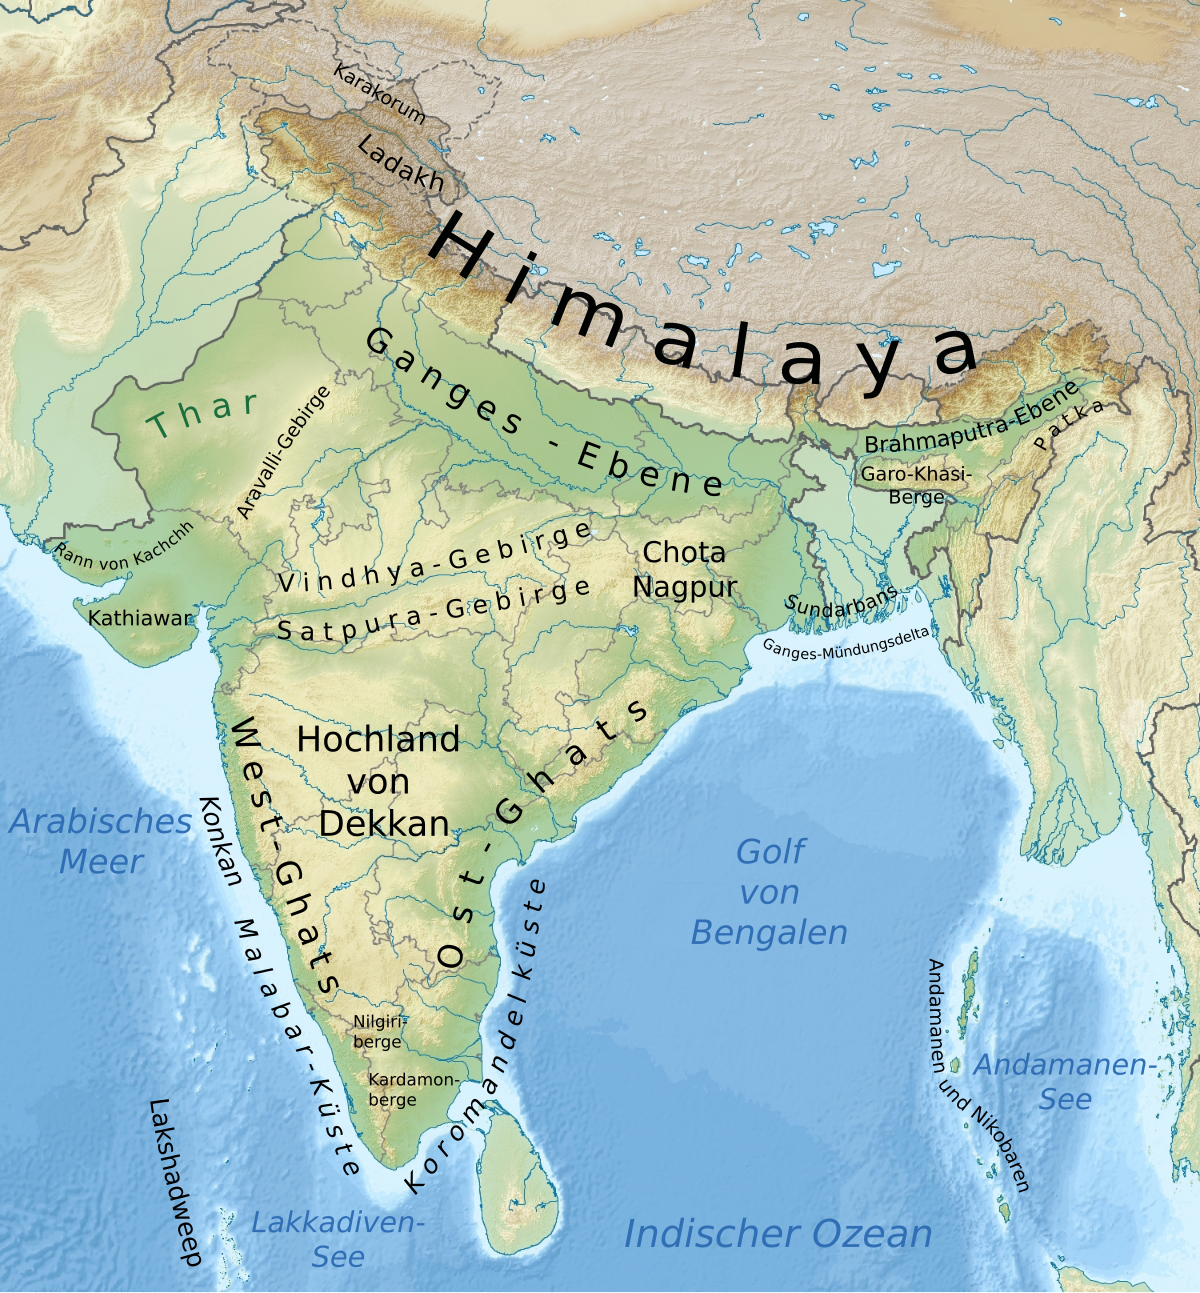 Гималаи на карте Индии. Река инд в Индии на карте. Река ганг в Индии на карте. Реки Индии на карте.